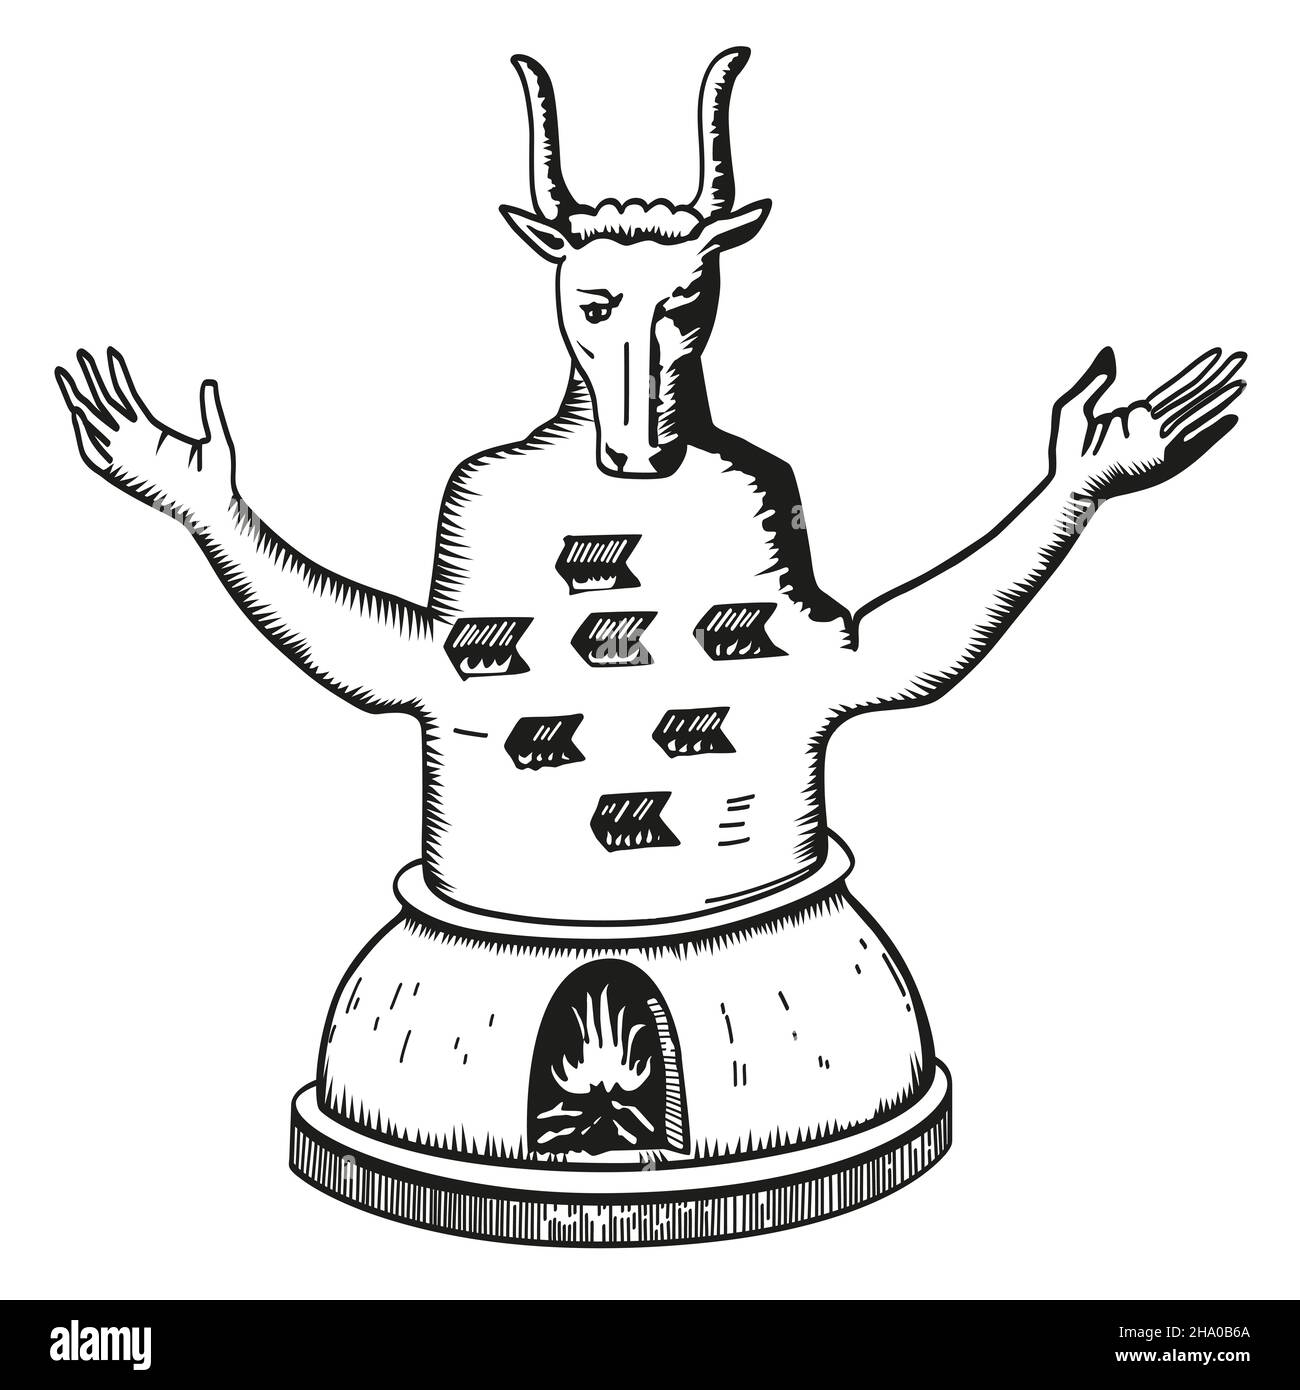 Moloch, auch bekannt als Molech oder Melek. Eine heidnische Gottheit, seit dem Mittelalter als Stierkopf-humanoides Idol dargestellt, mit ausgestreckten Armen. Stockfoto